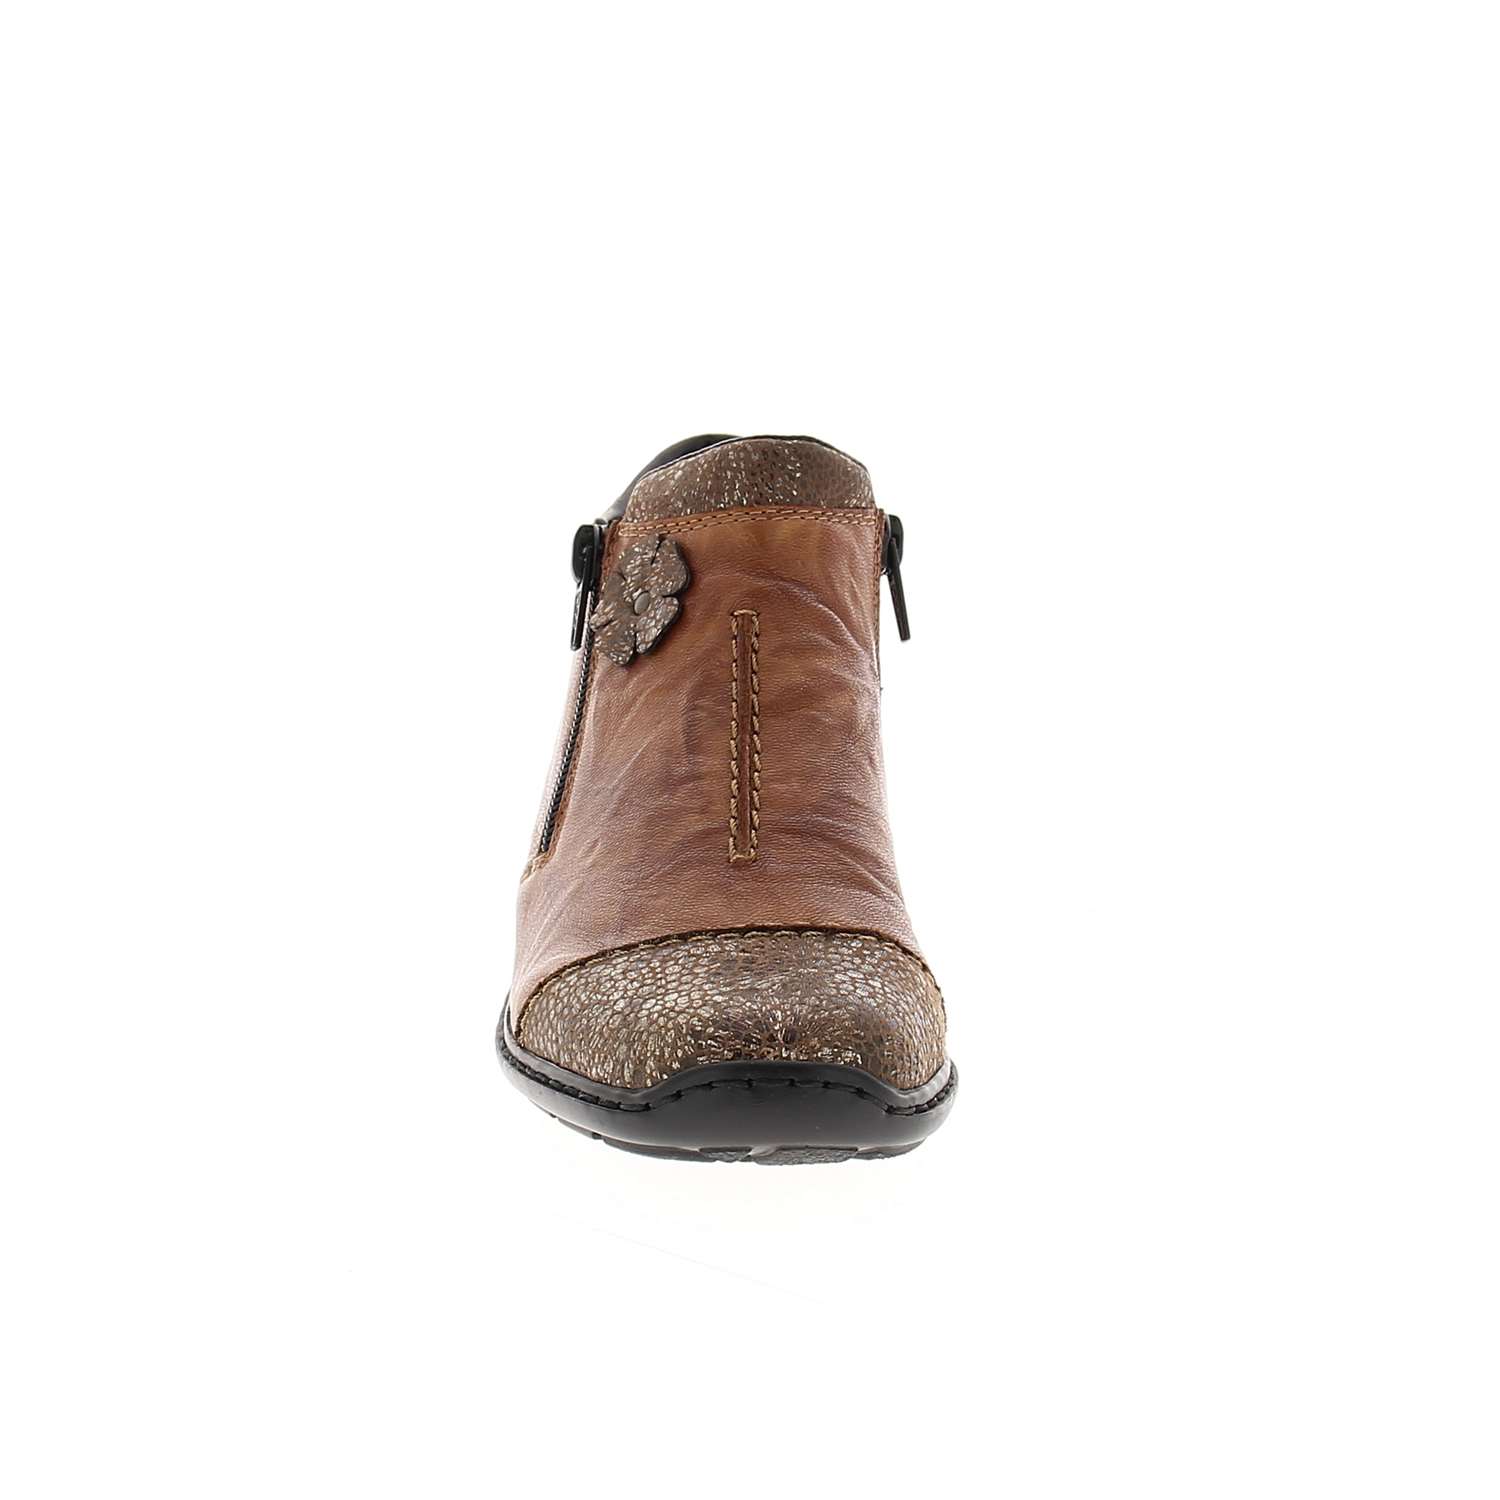 03 - REVIEW - RIEKER - Boots et bottines - Cuir